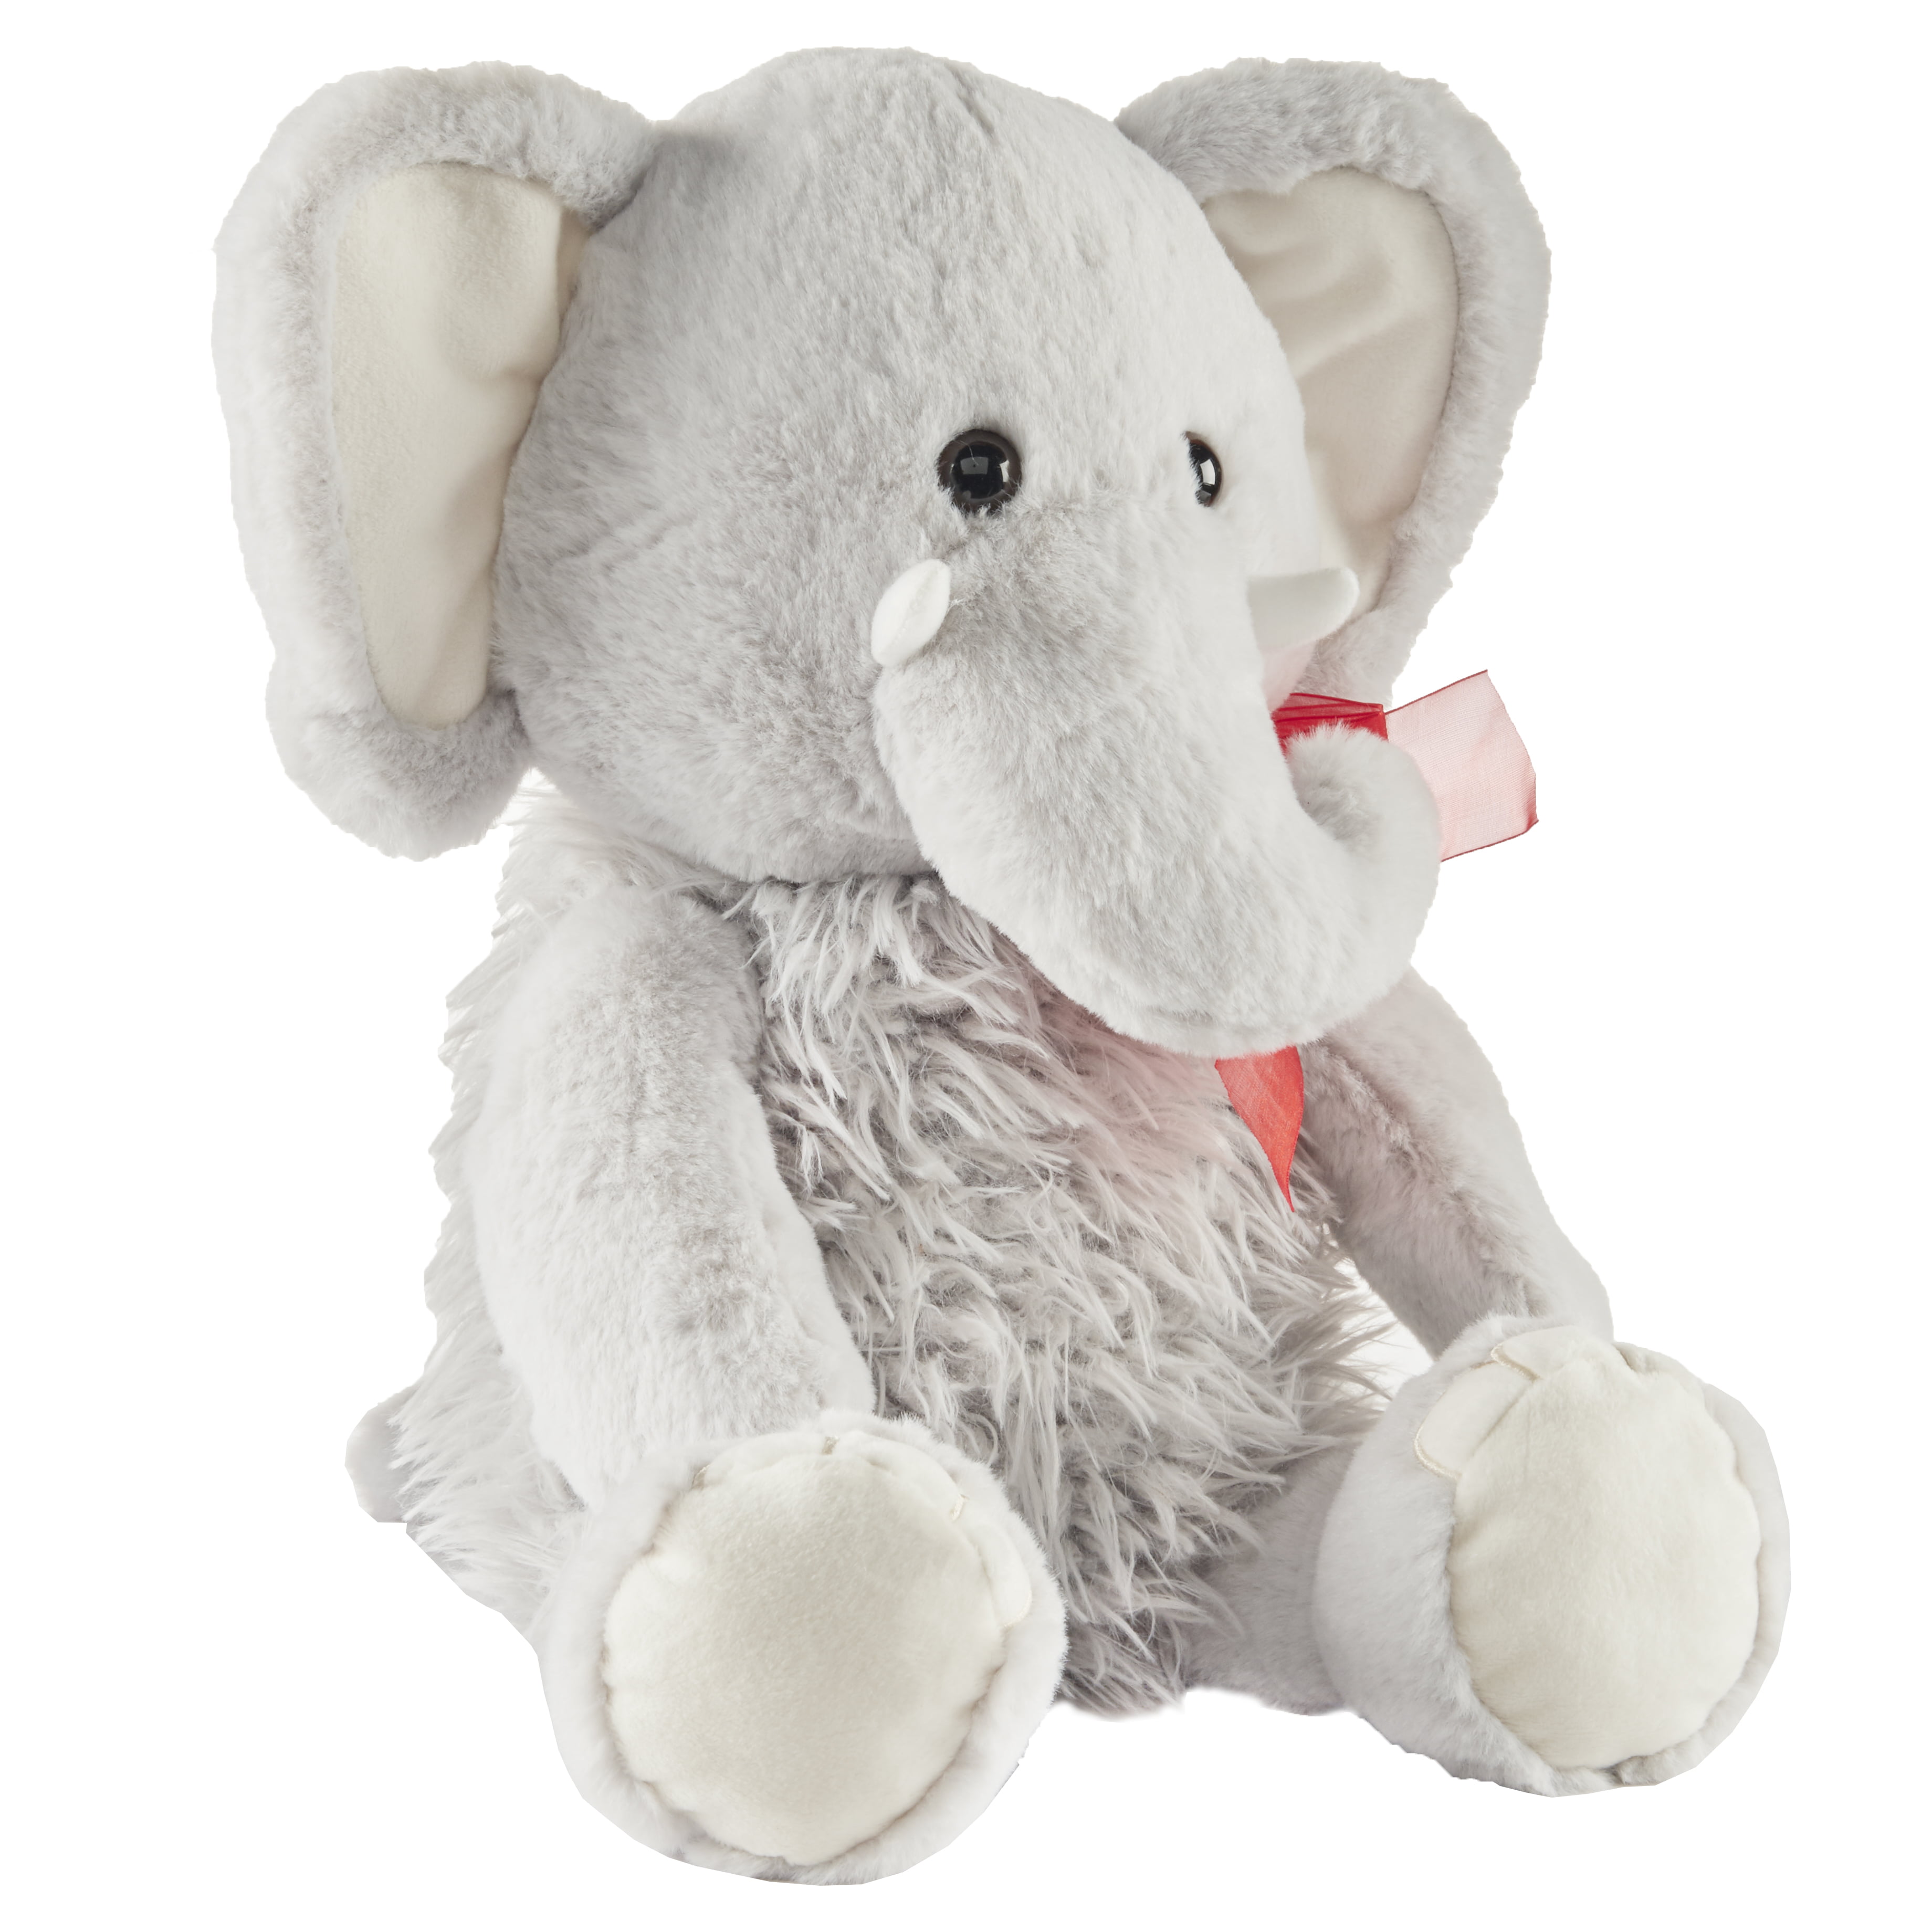 stuffed elephant walmart